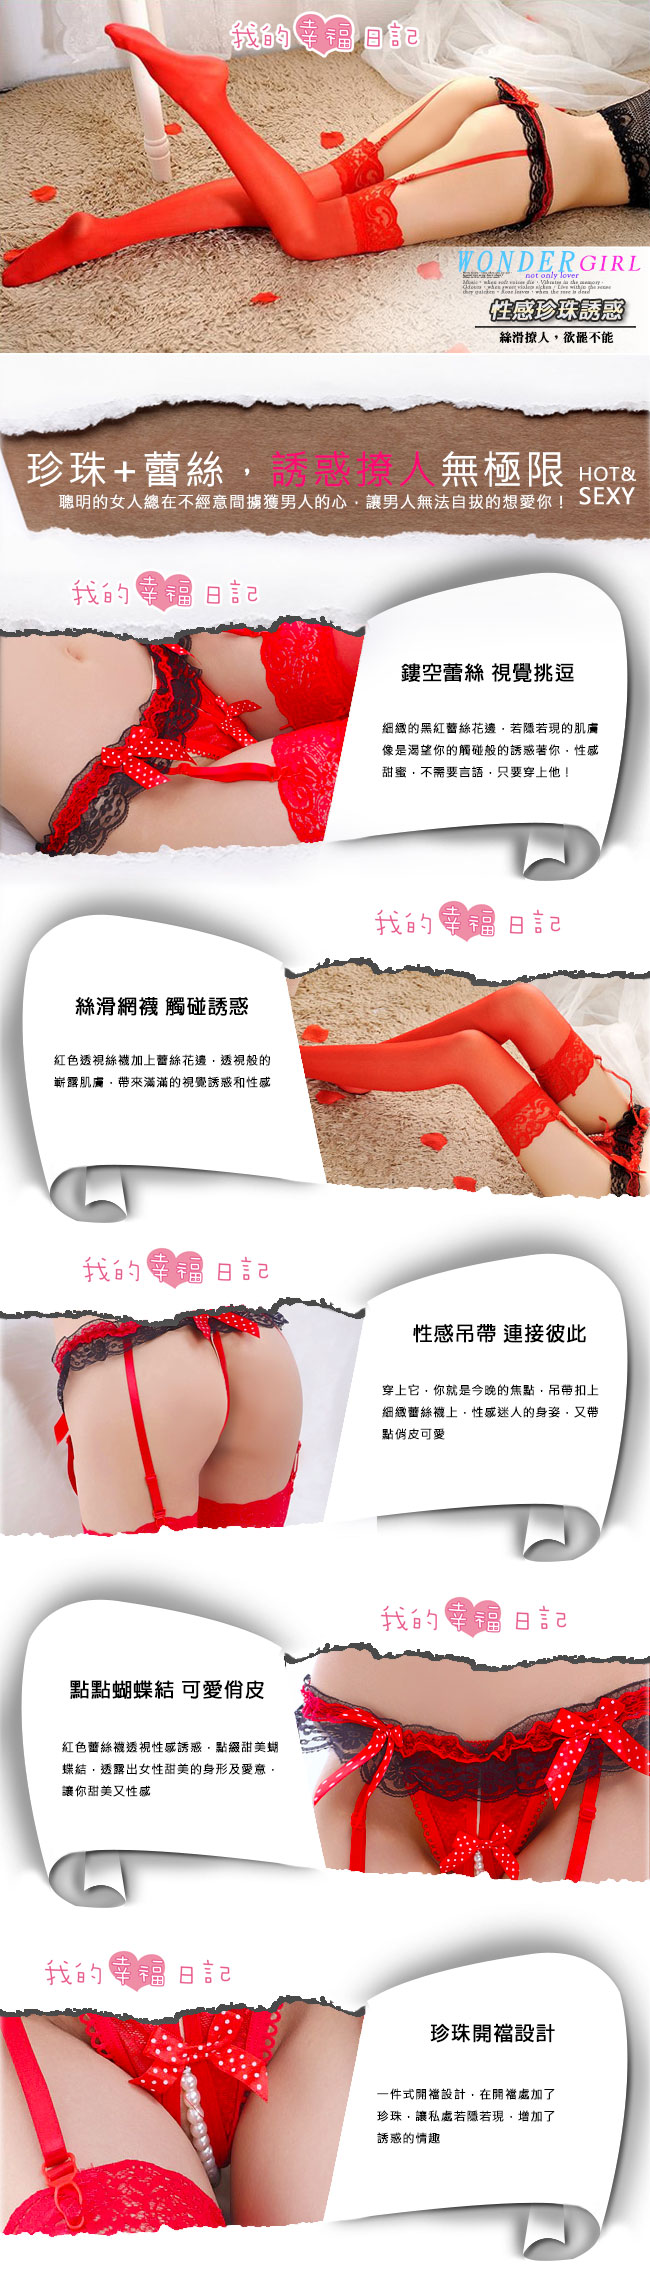 珍珠愛戀‧珍珠開襠吊襪帶 + 大腿蕾絲絲襪(紅)